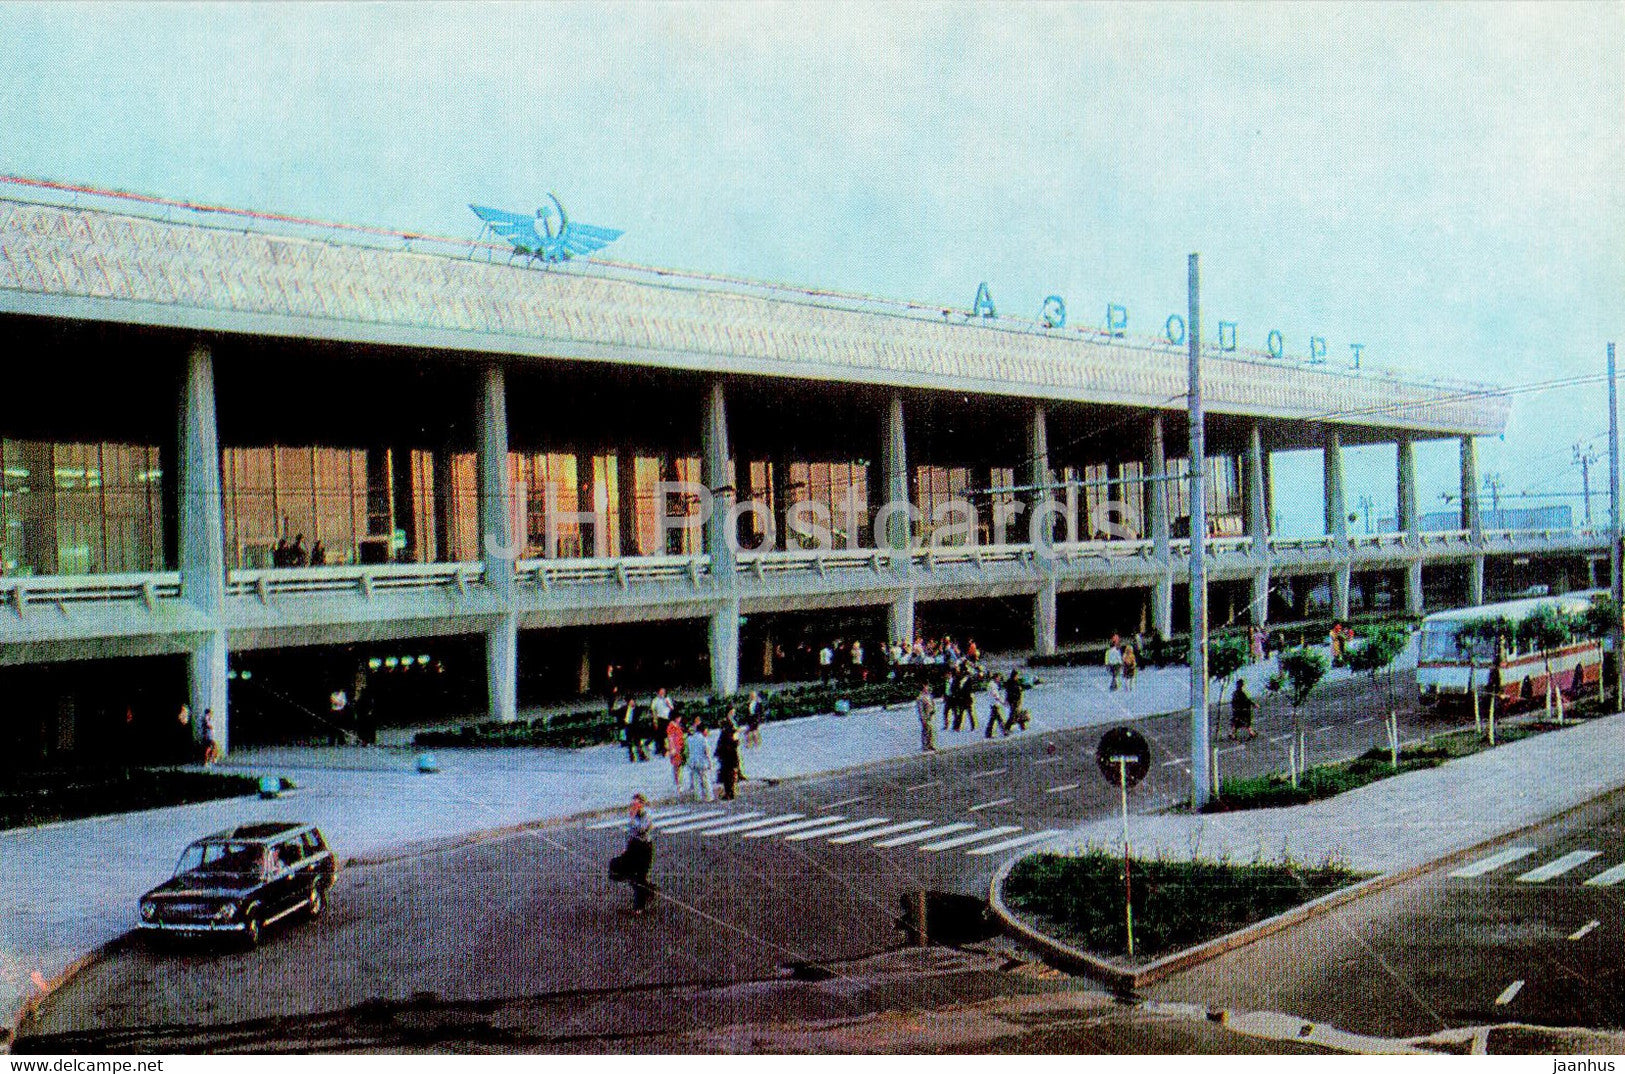 Tashkent - Airport - 1980 - Uzbekistan USSR - unused - JH Postcards